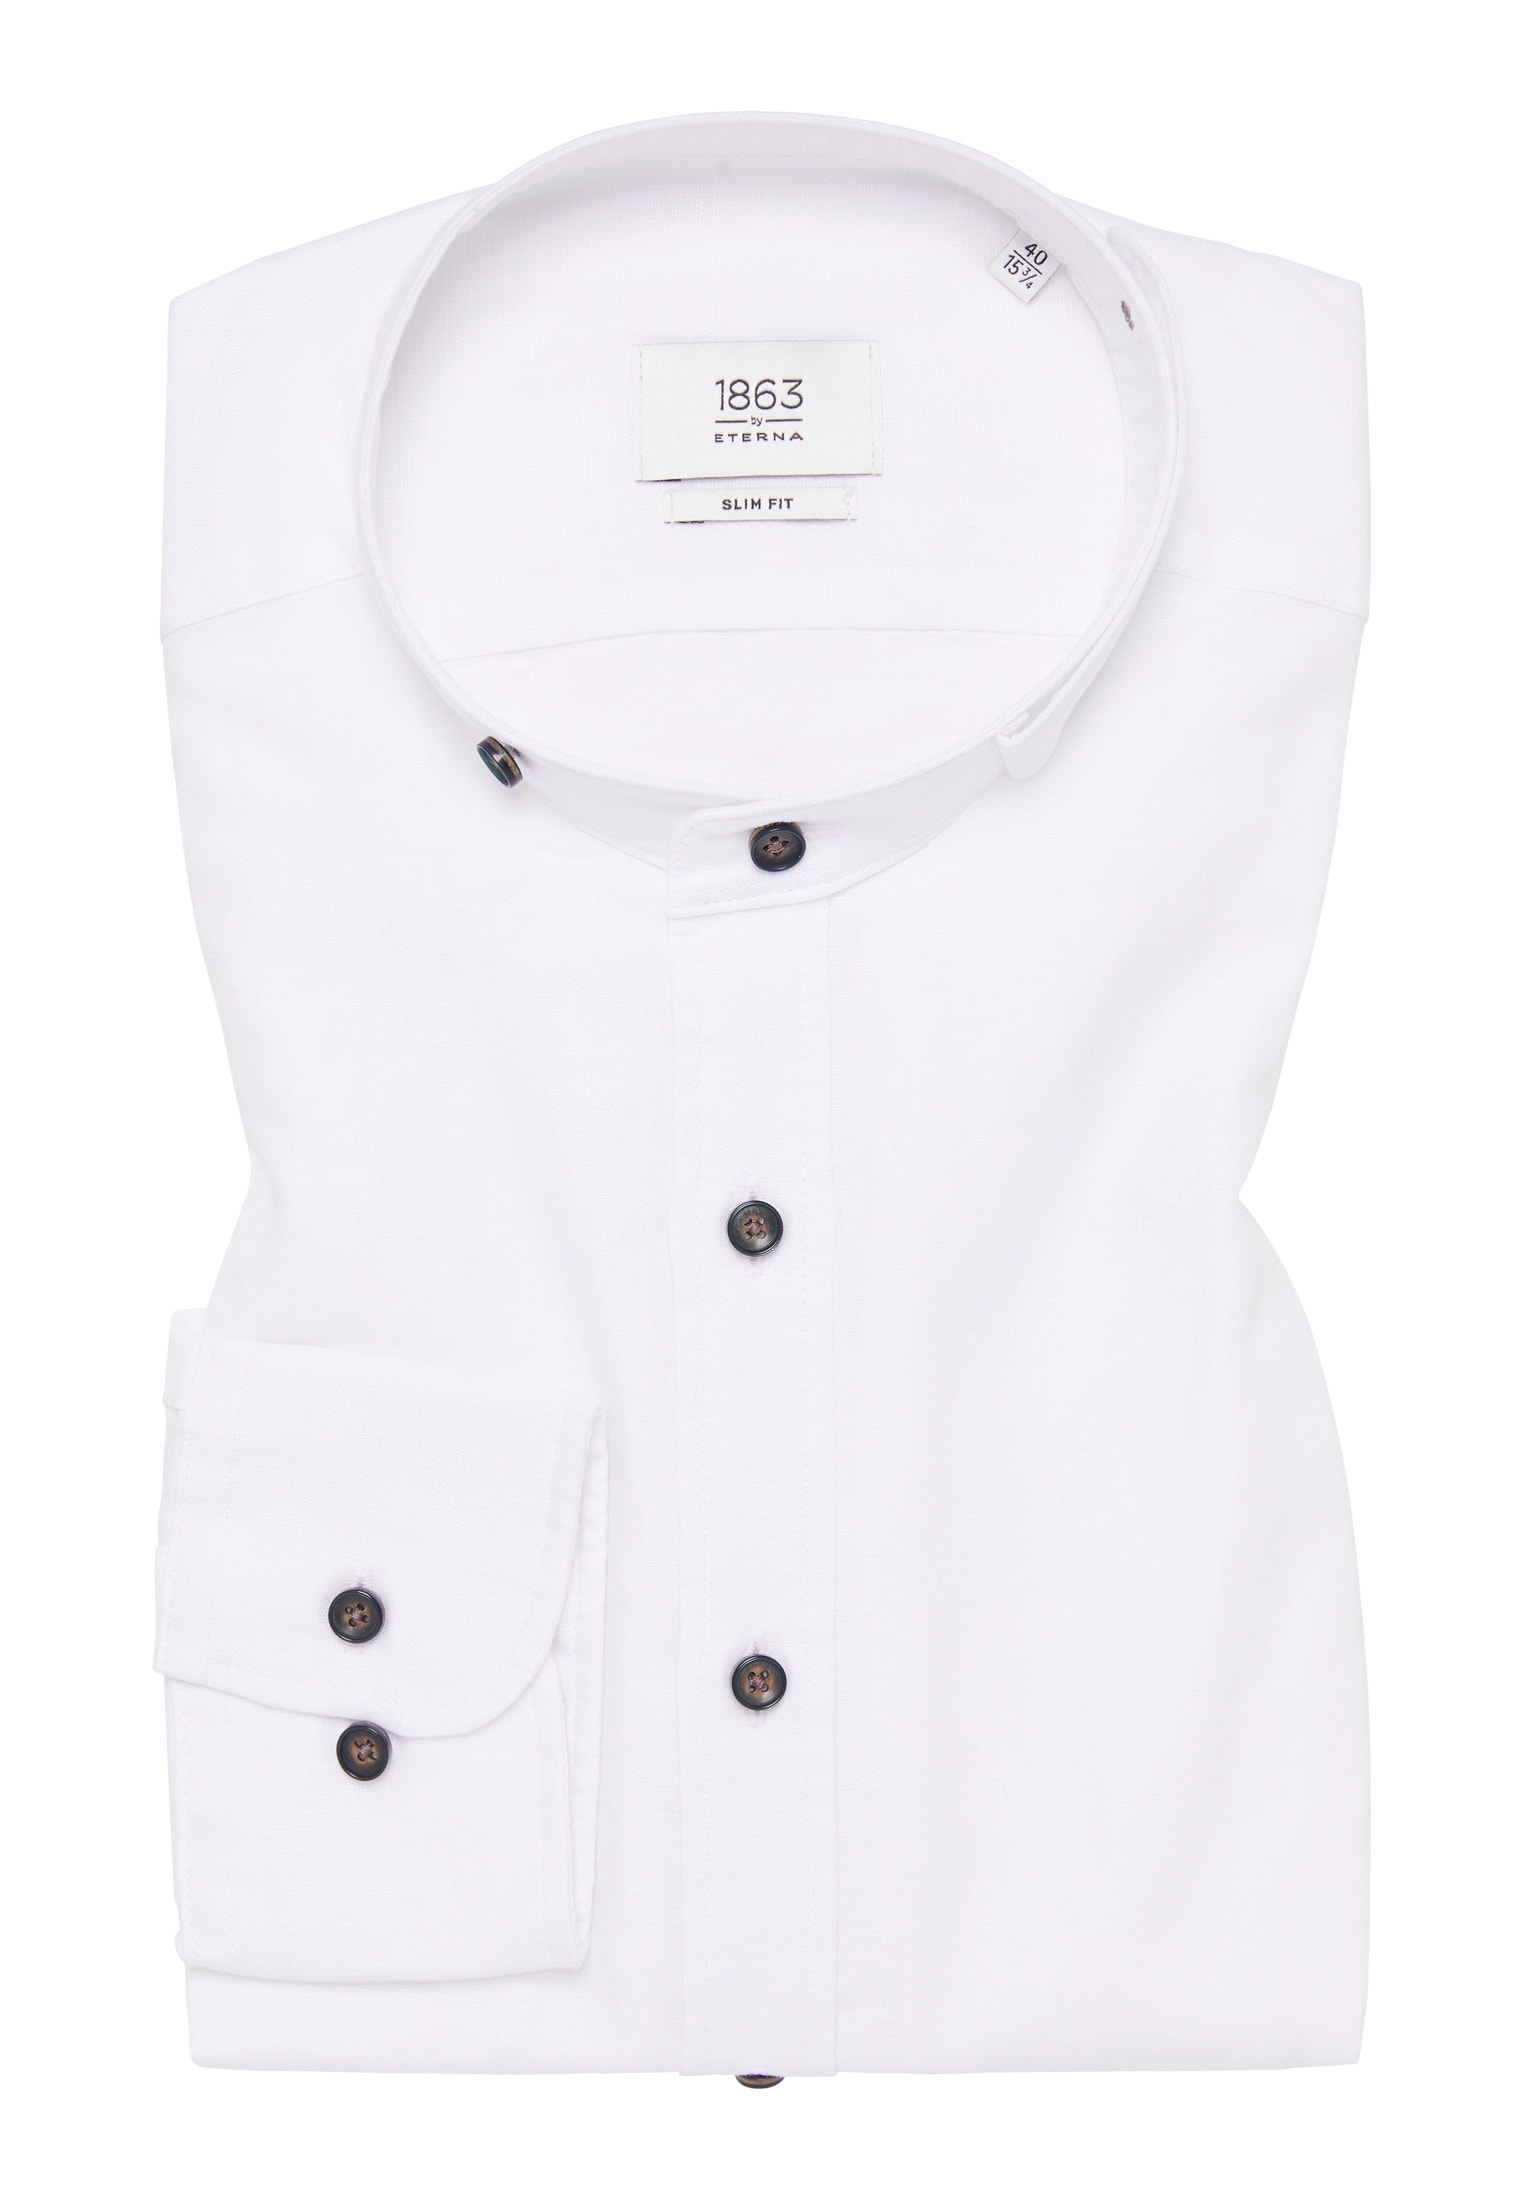 SLIM FIT Linen Shirt in weiß unifarben | weiß | 40 | Langarm |  1SH12593-00-01-40-1/1 | Hemden